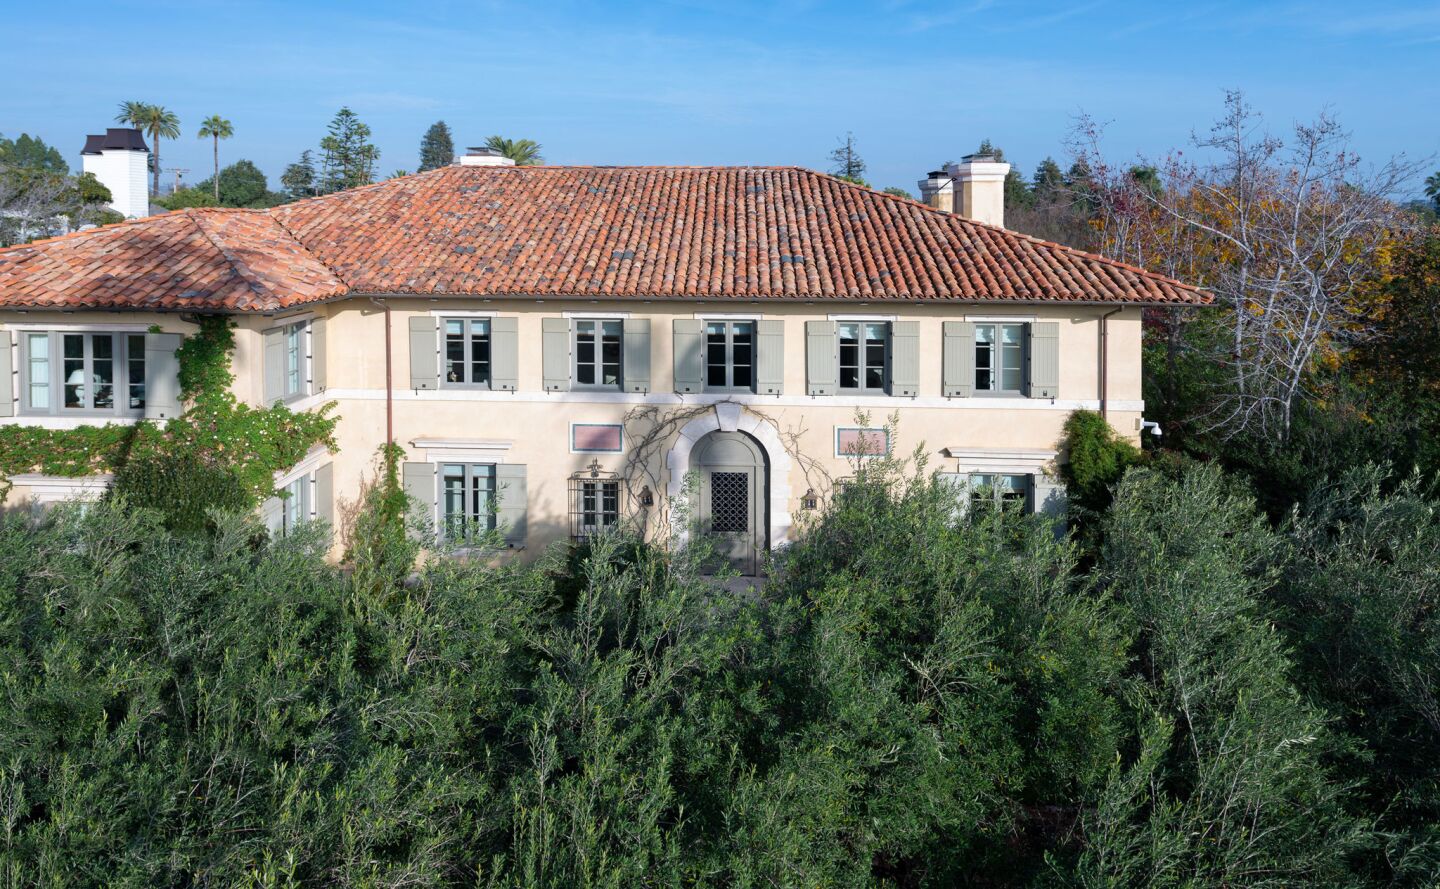 The Mediterranean-style villa.